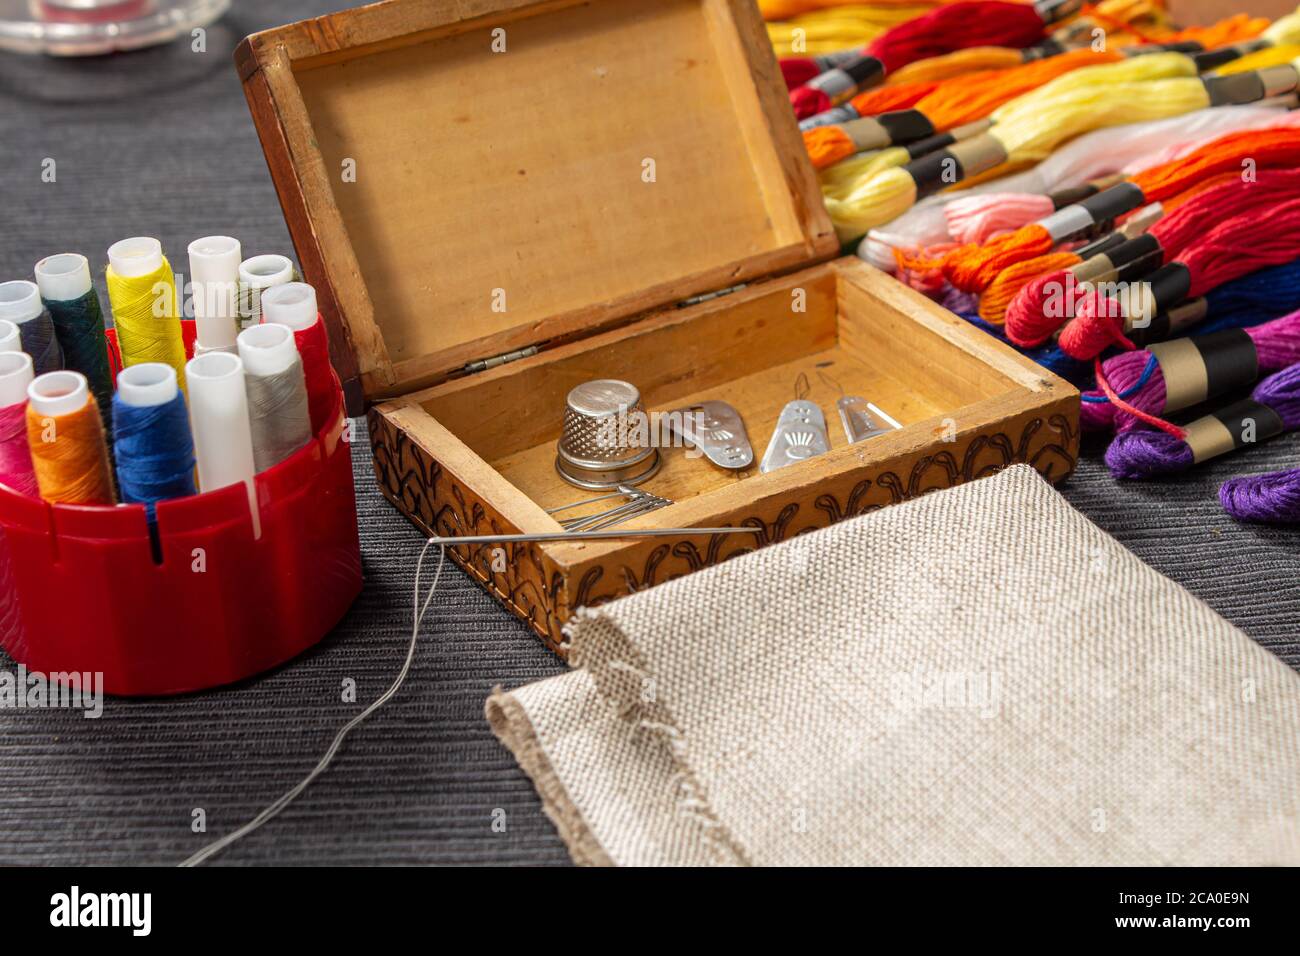 Los accesorios de costura están en una caja de madera. El mulina y los hilos coloreados se encuentran en la mesa al lado del ataúd. La aguja con el roscado se encuentra Foto de stock